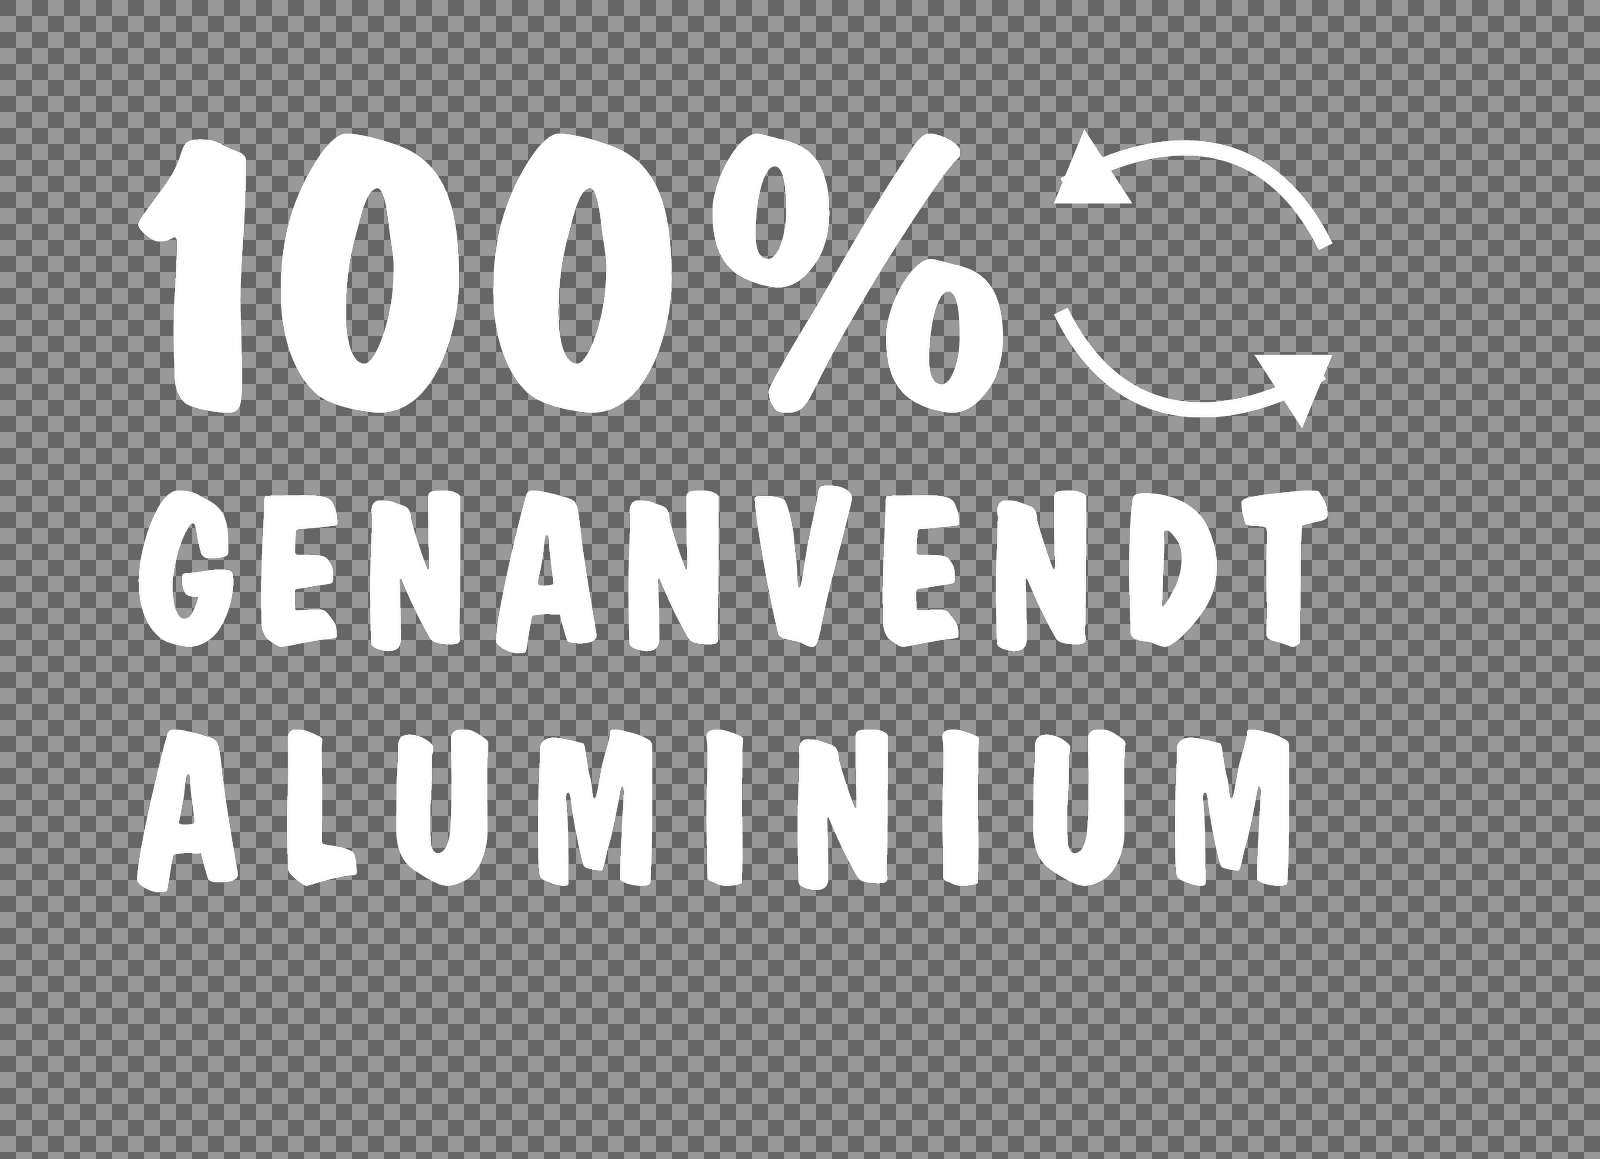 100% Genanvendt aluminium